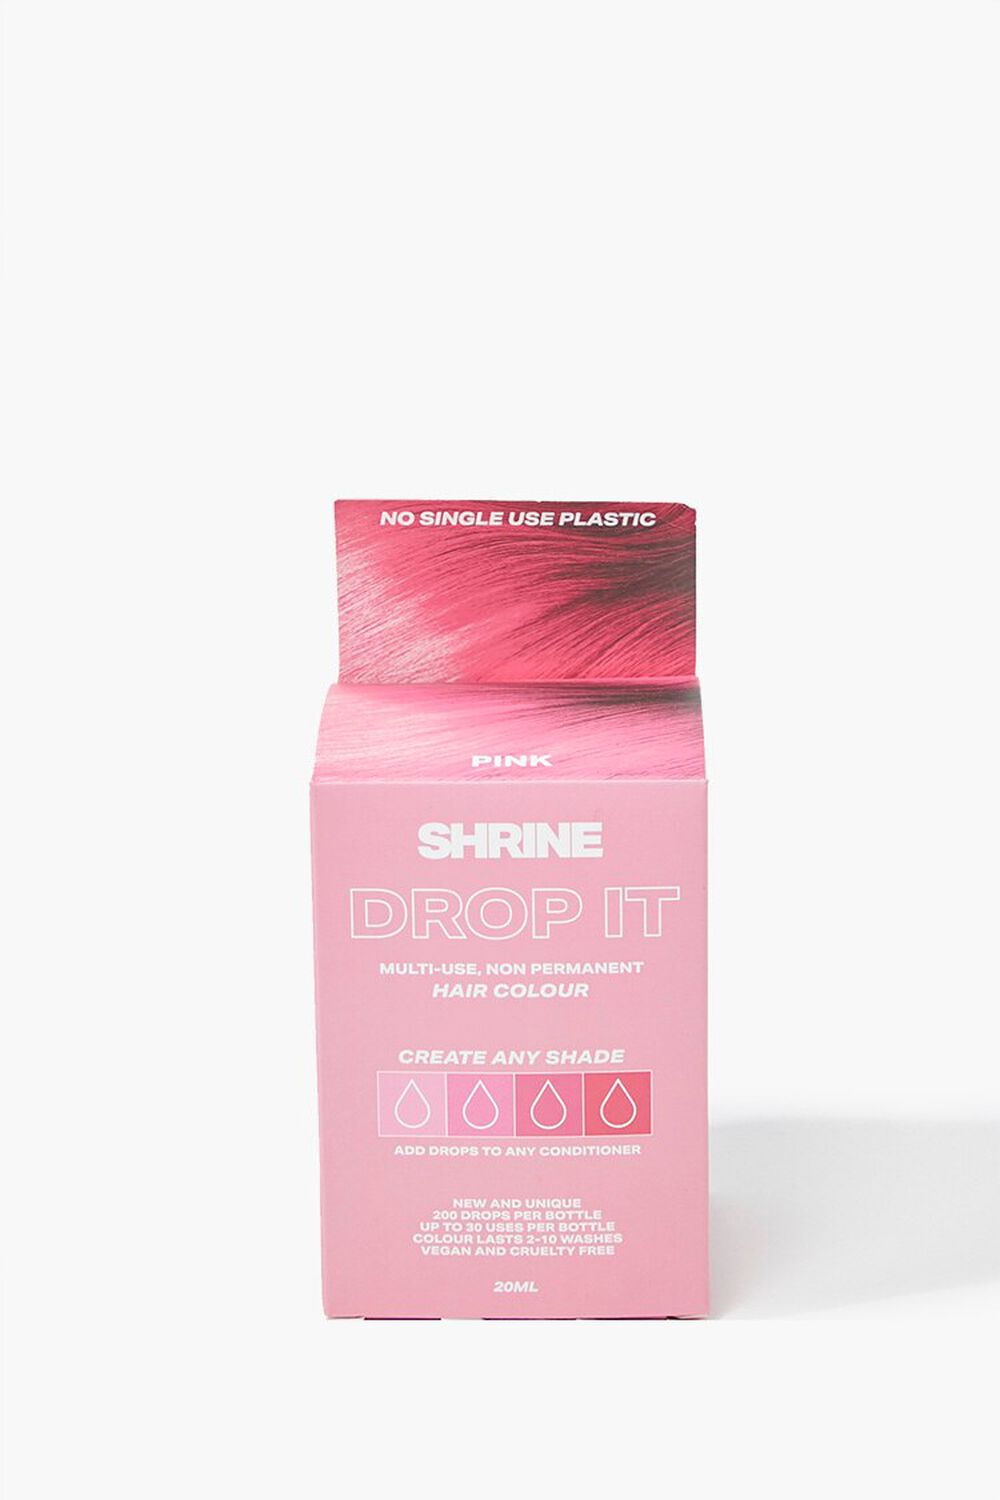 Pink Hair Dye - Drop It Kit, image 2